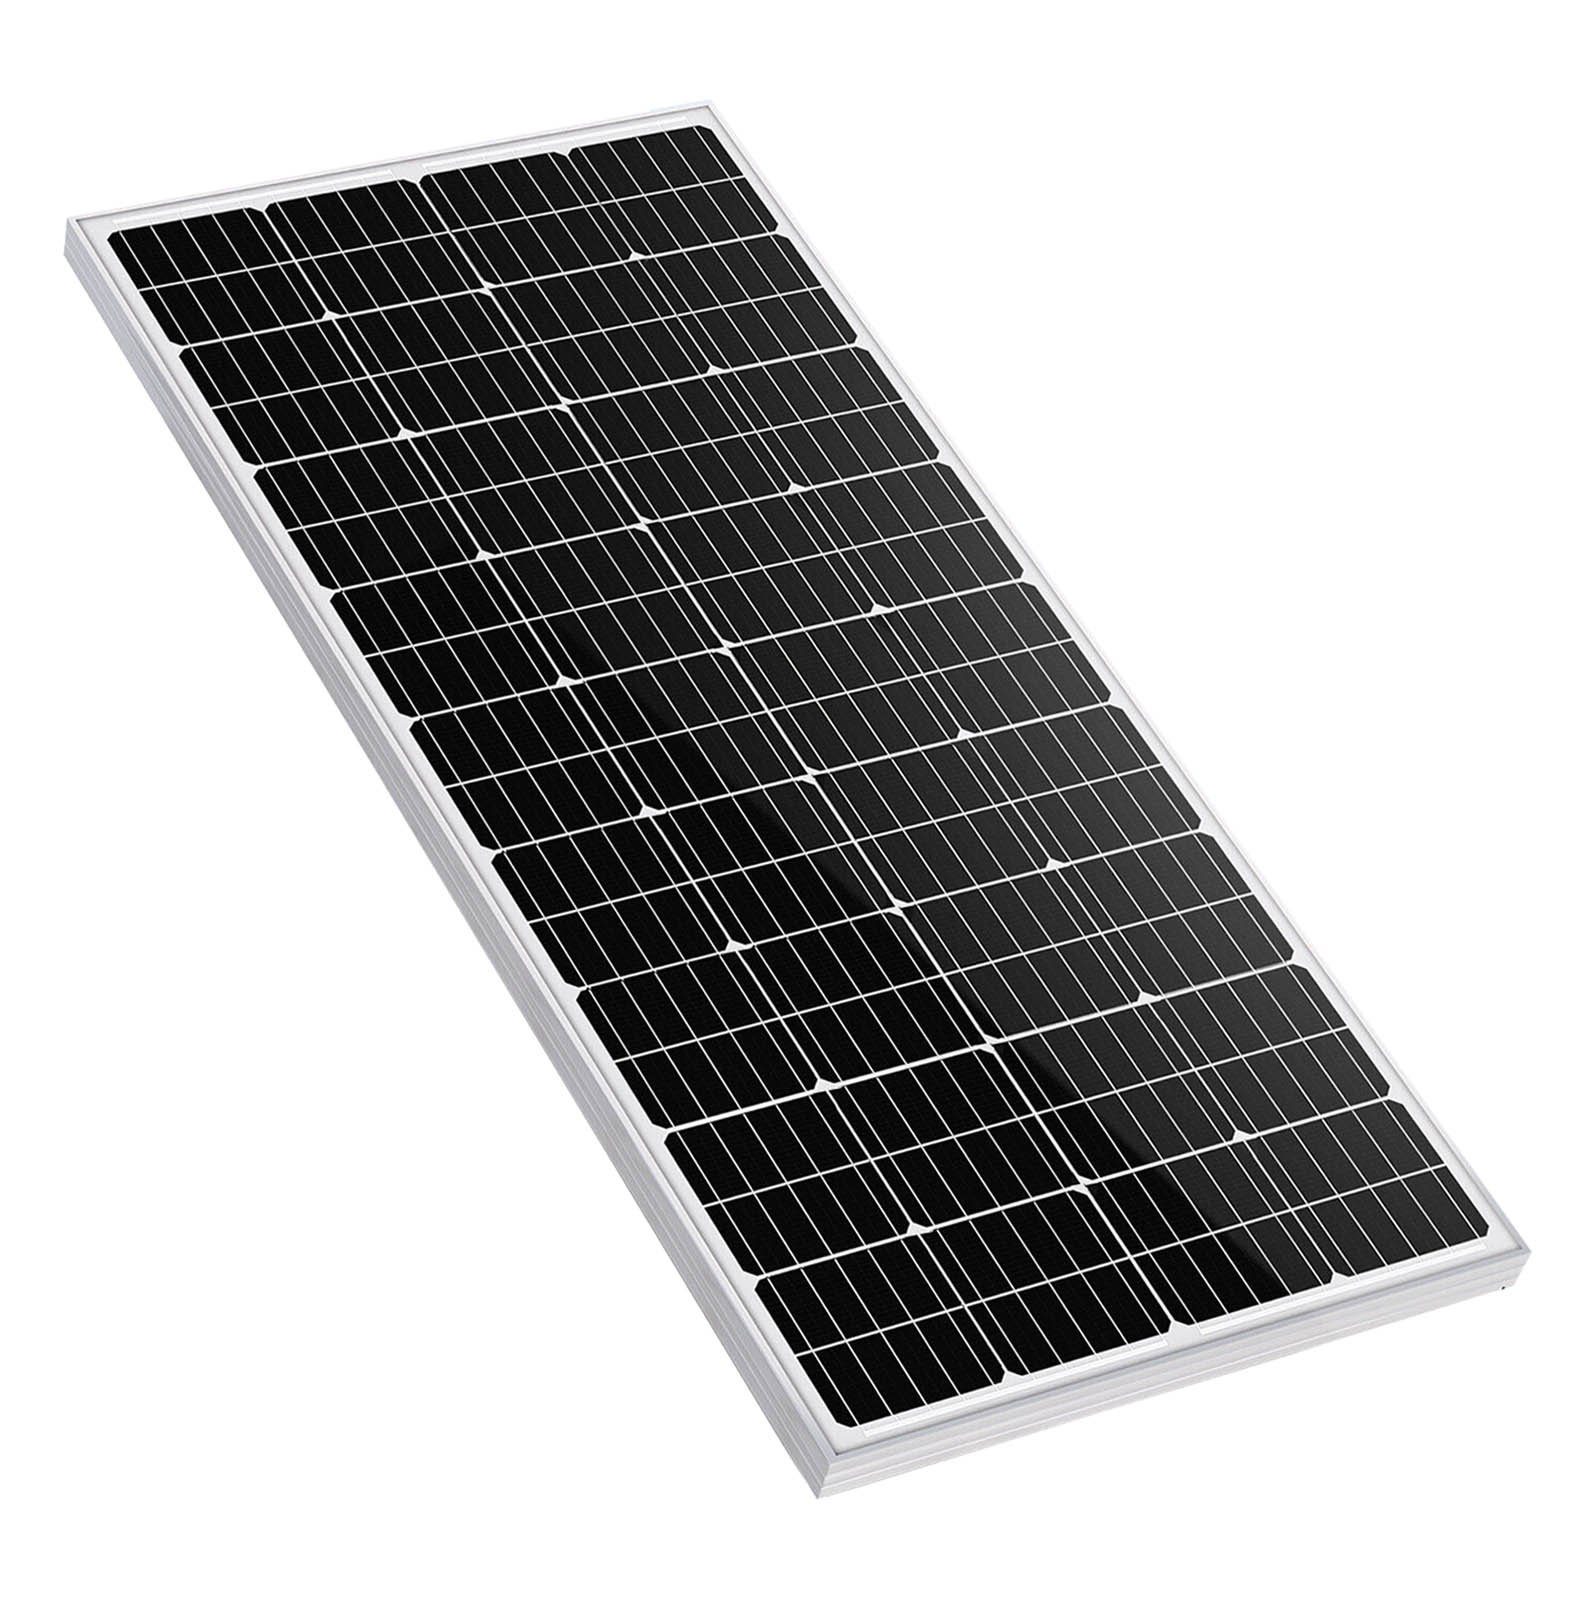 Akku 300W Lithium Solarpanel + 150Ah Solarmodul LiFePO4 GLIESE Batterie